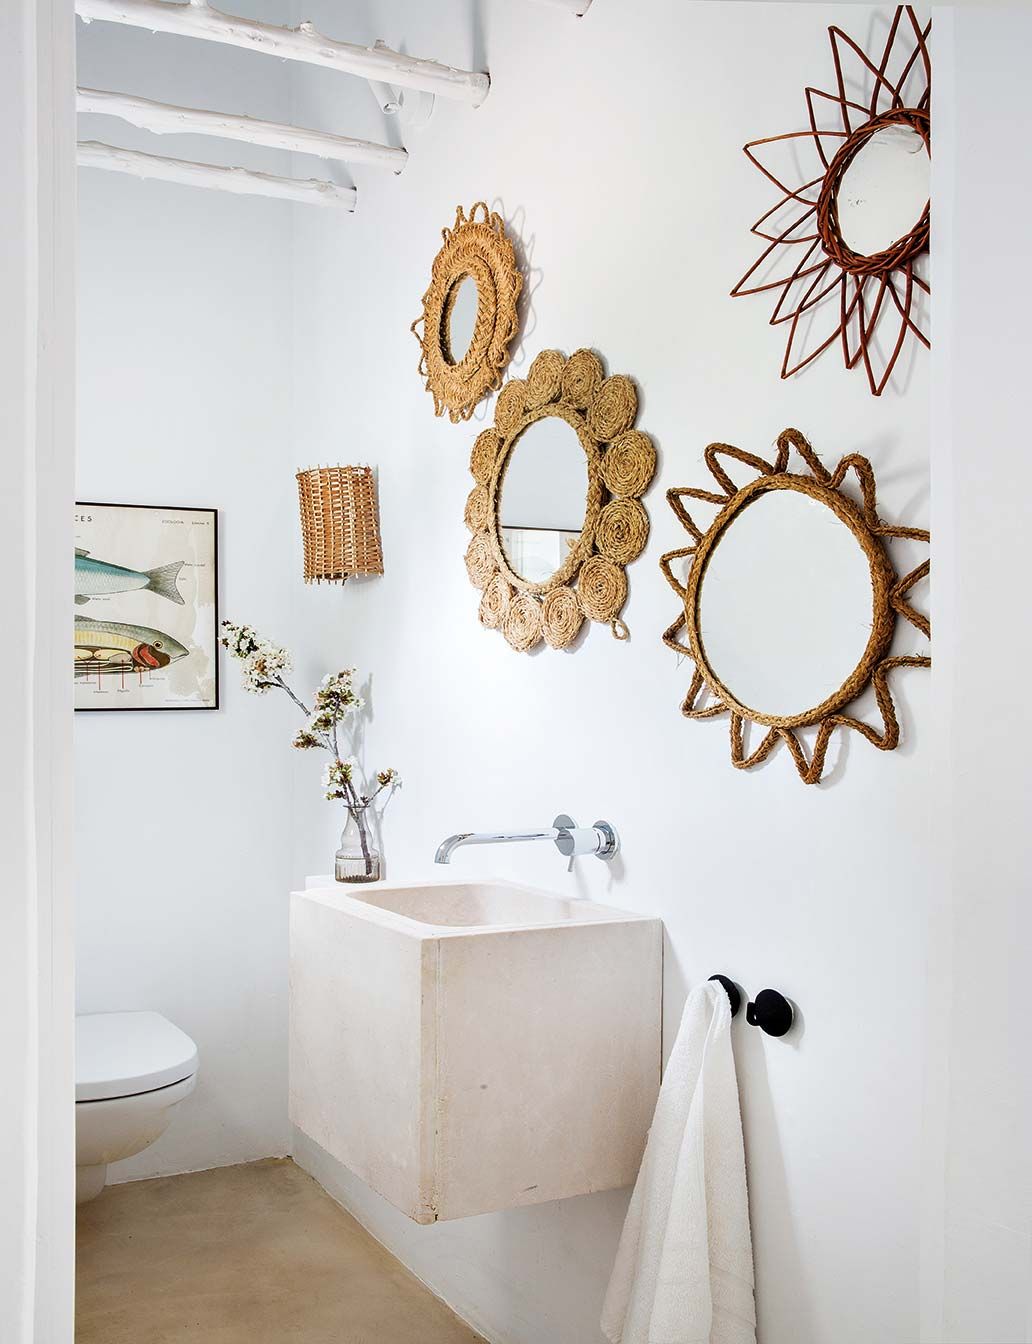 Cómo Decorar el Espejo del Baño - [16 Ideas Originales]  Vinilos para  baños, Decoración de unas, Inspiración para baños